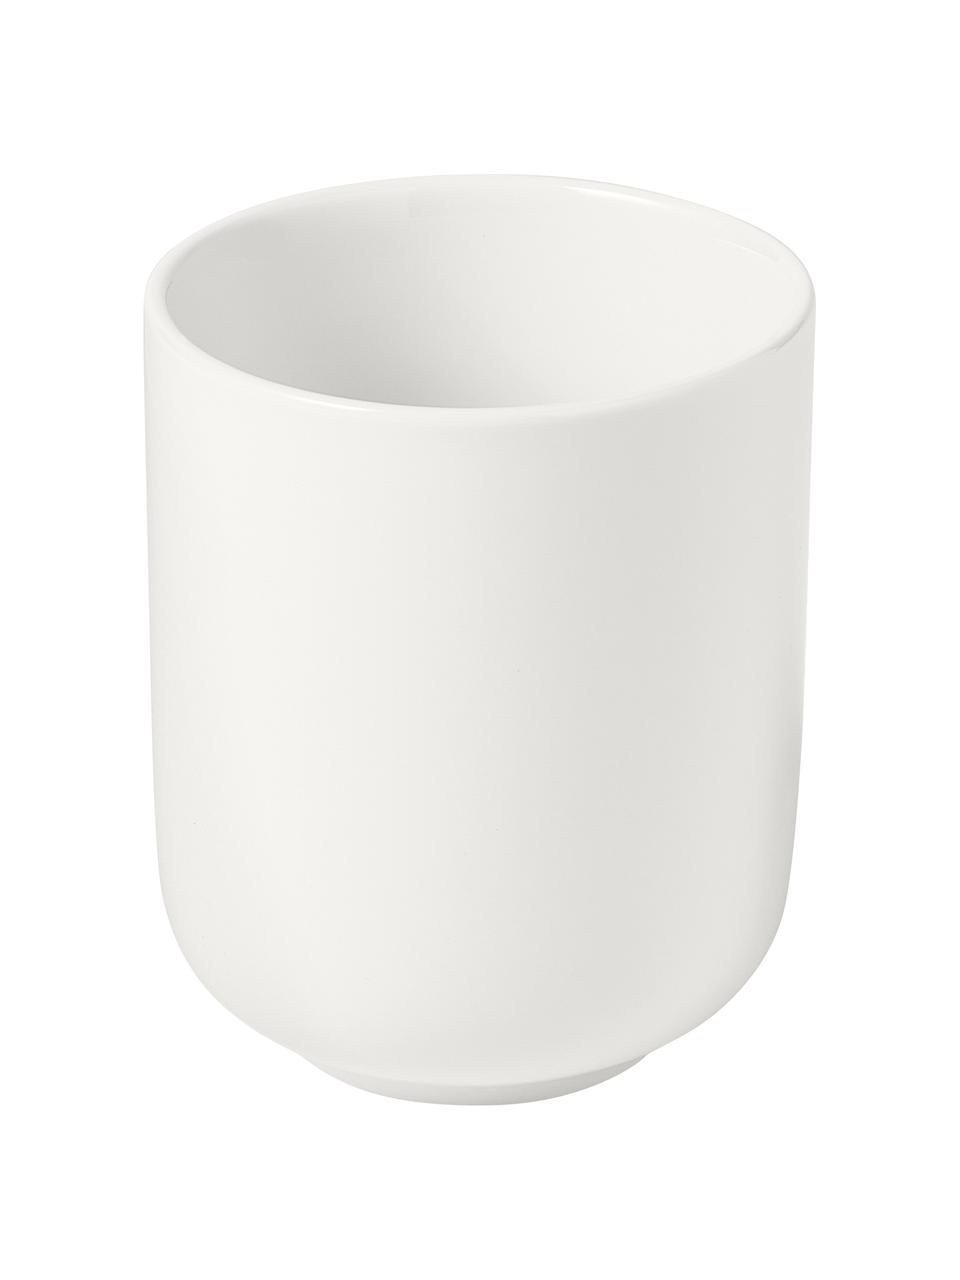 Tazza caffè in porcellana Nessa 4 pz, Porcellana a pasta dura di alta qualità, Bianco, Ø 8 x Alt. 10 cm